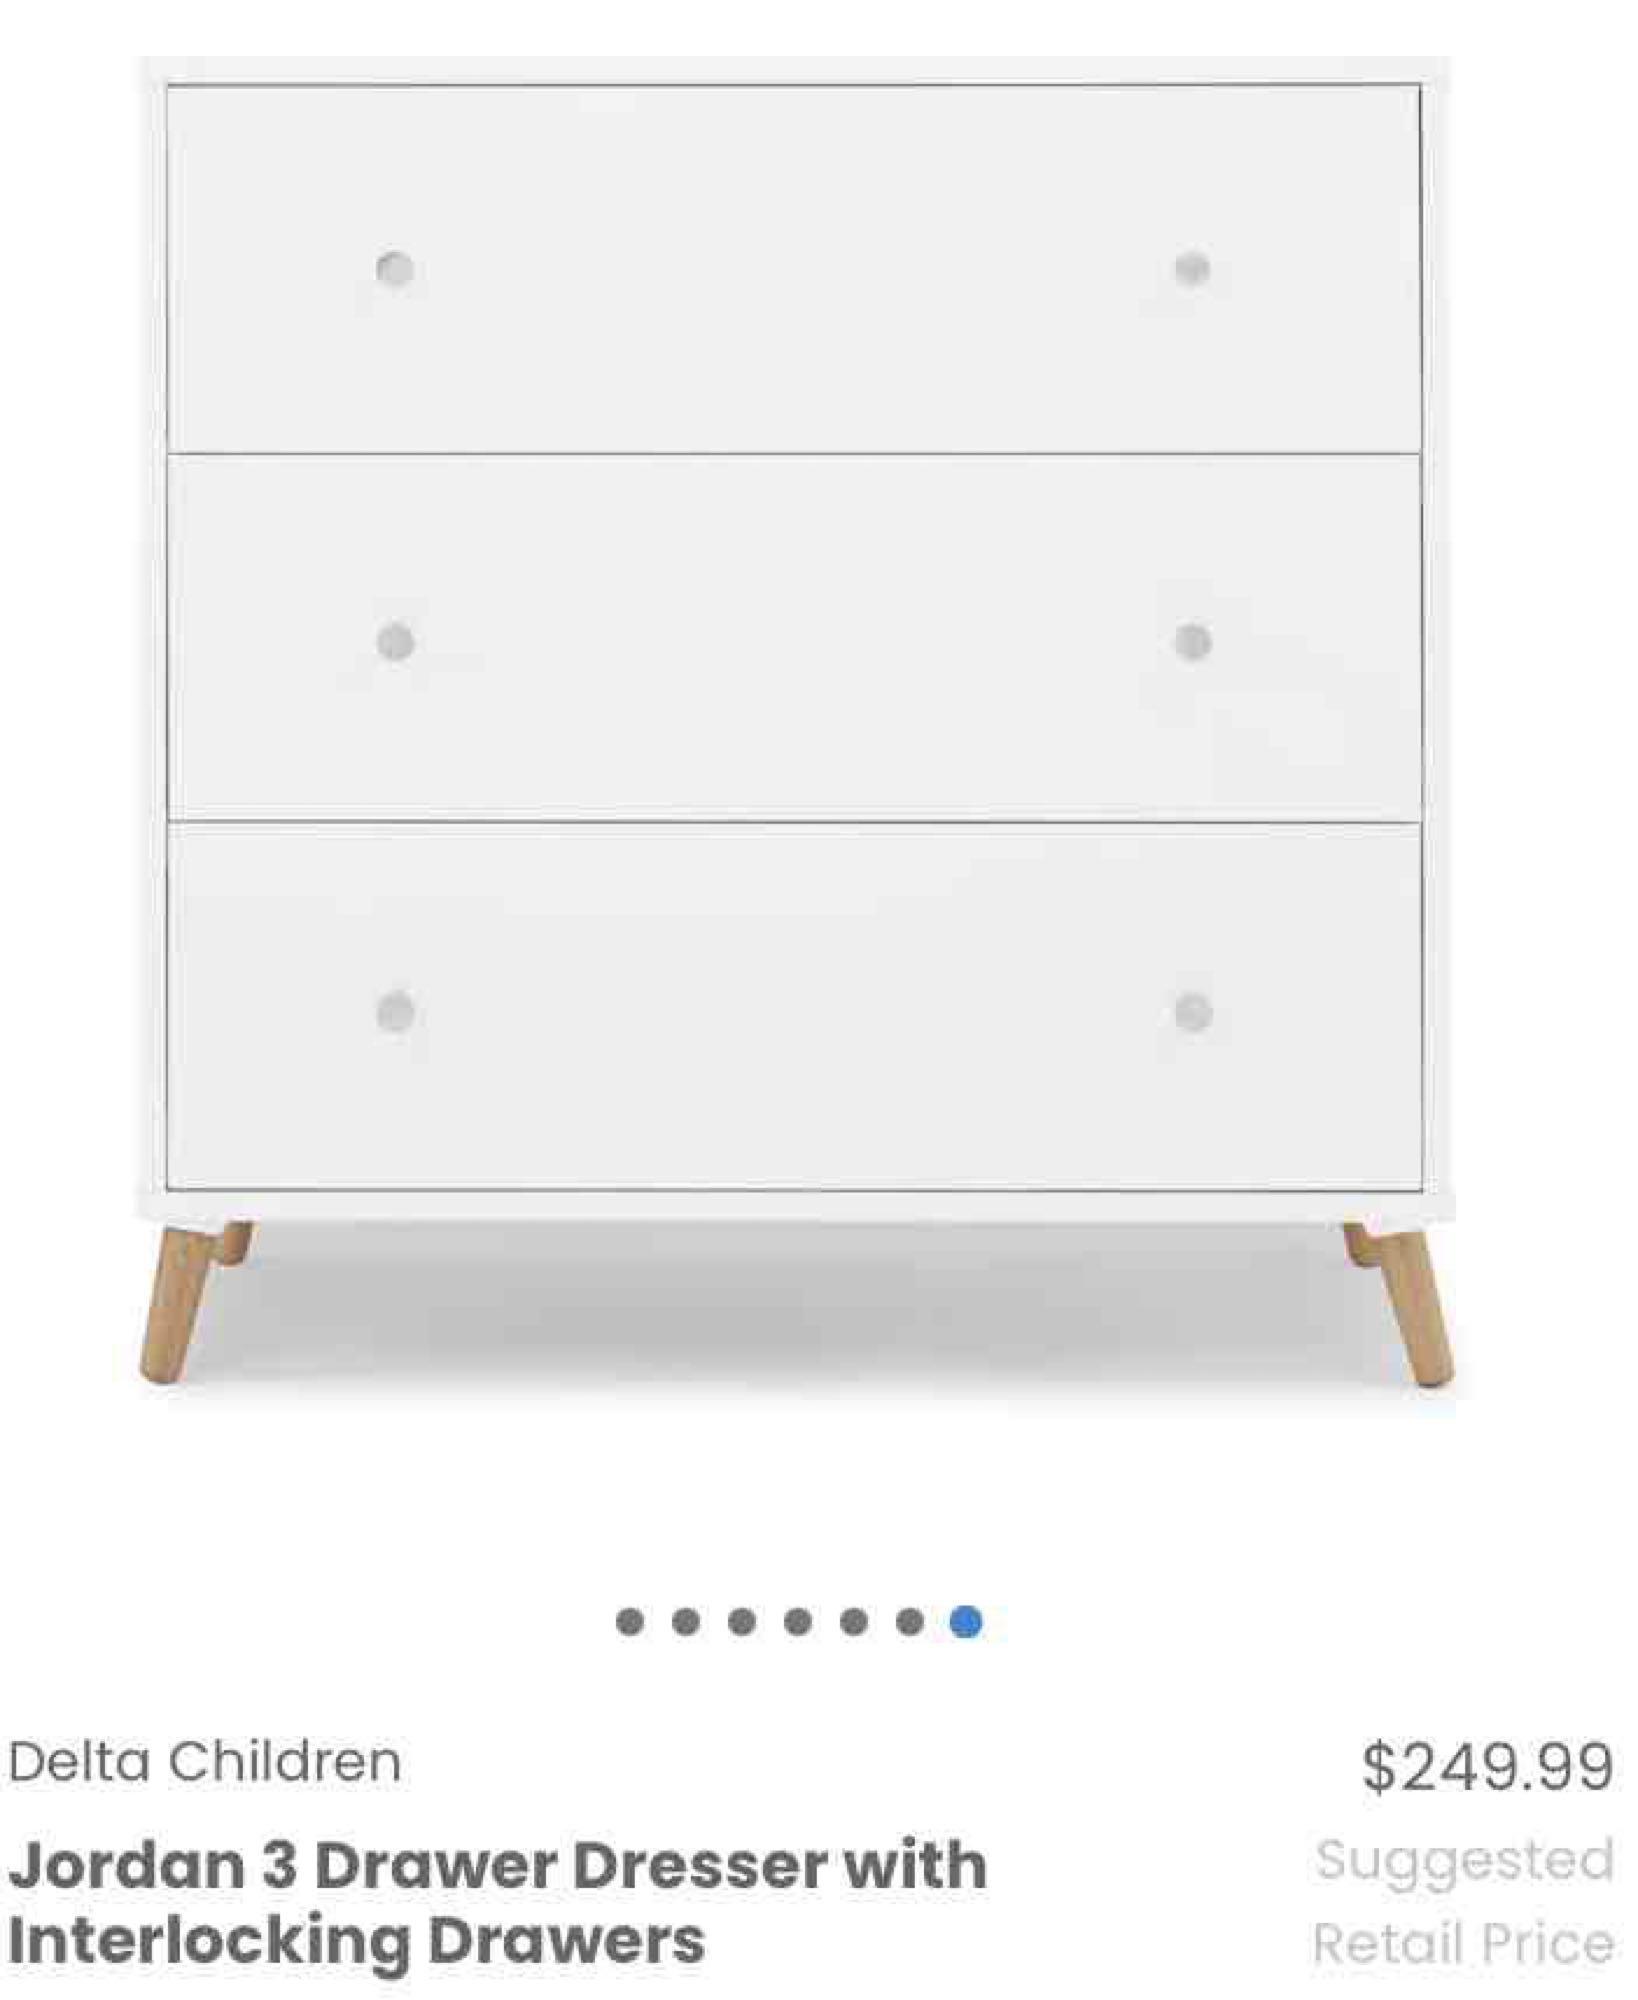 Delta Children Jordan 3 Drawer Dresser with Interlocking Drawers